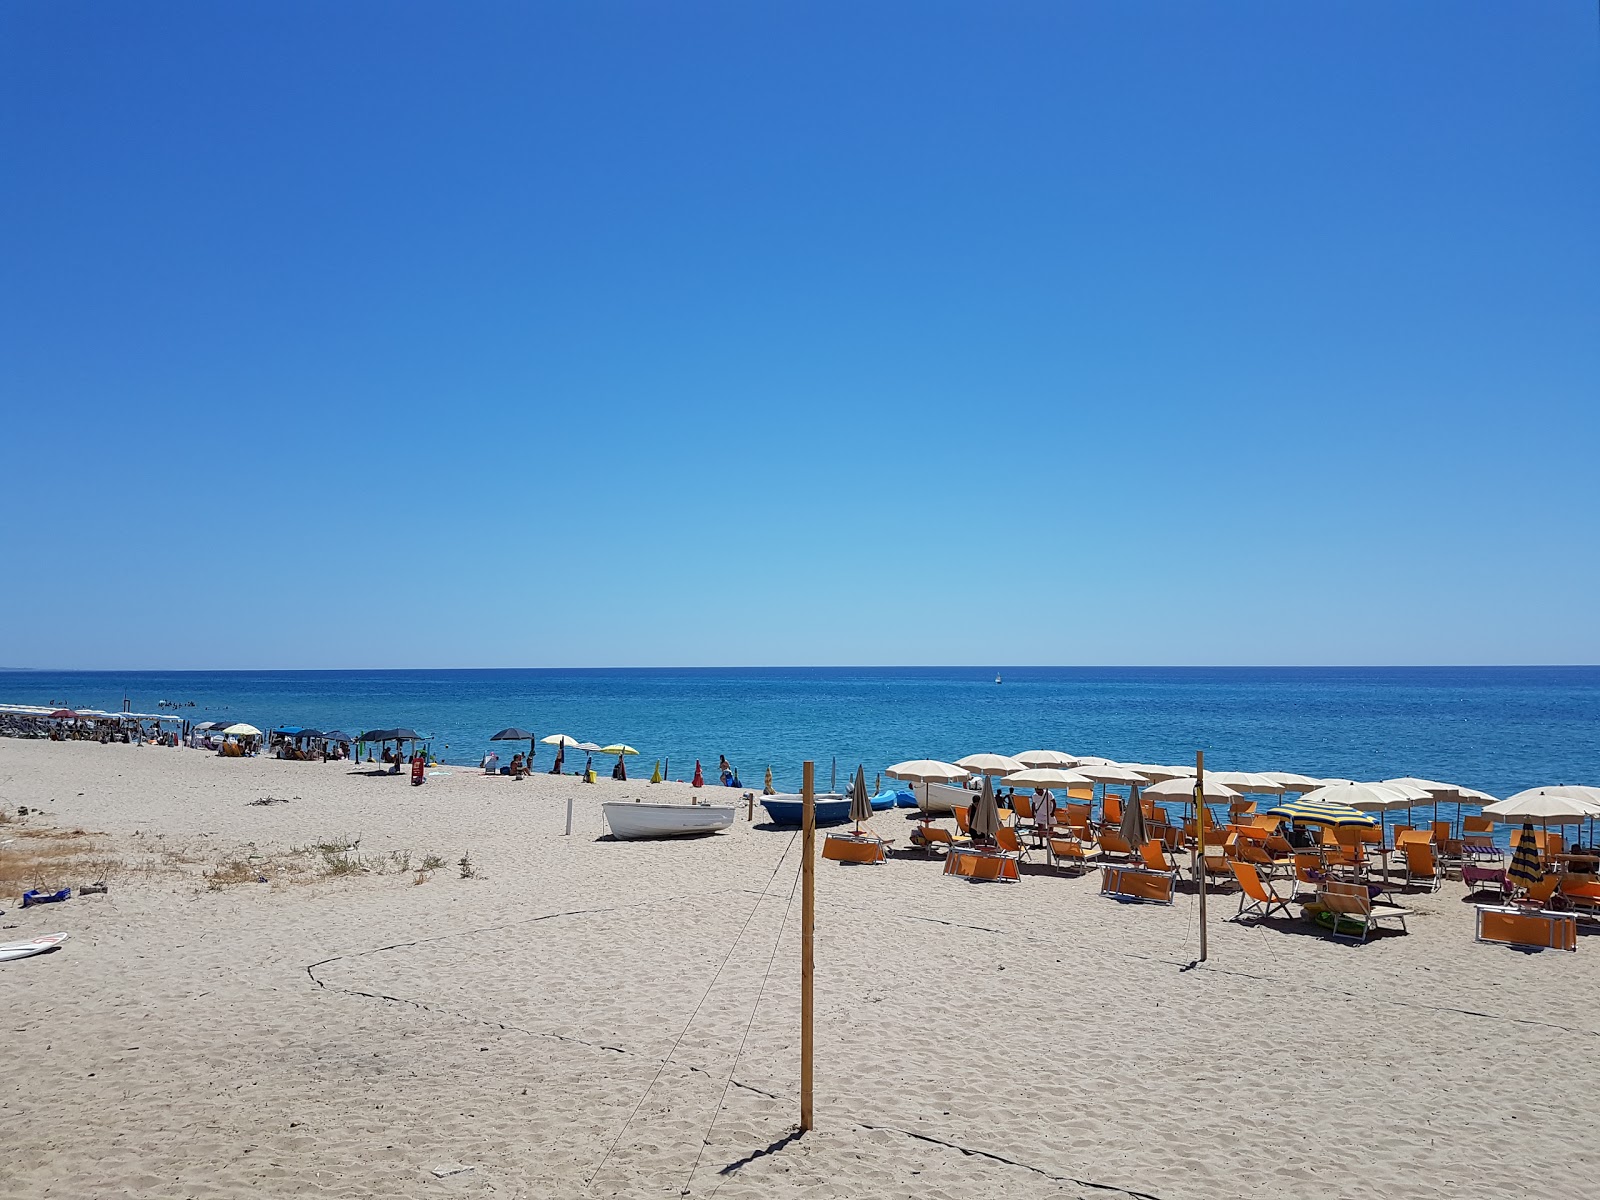 Foto af Villaggio Carrao Strand - populært sted blandt afslapningskendere